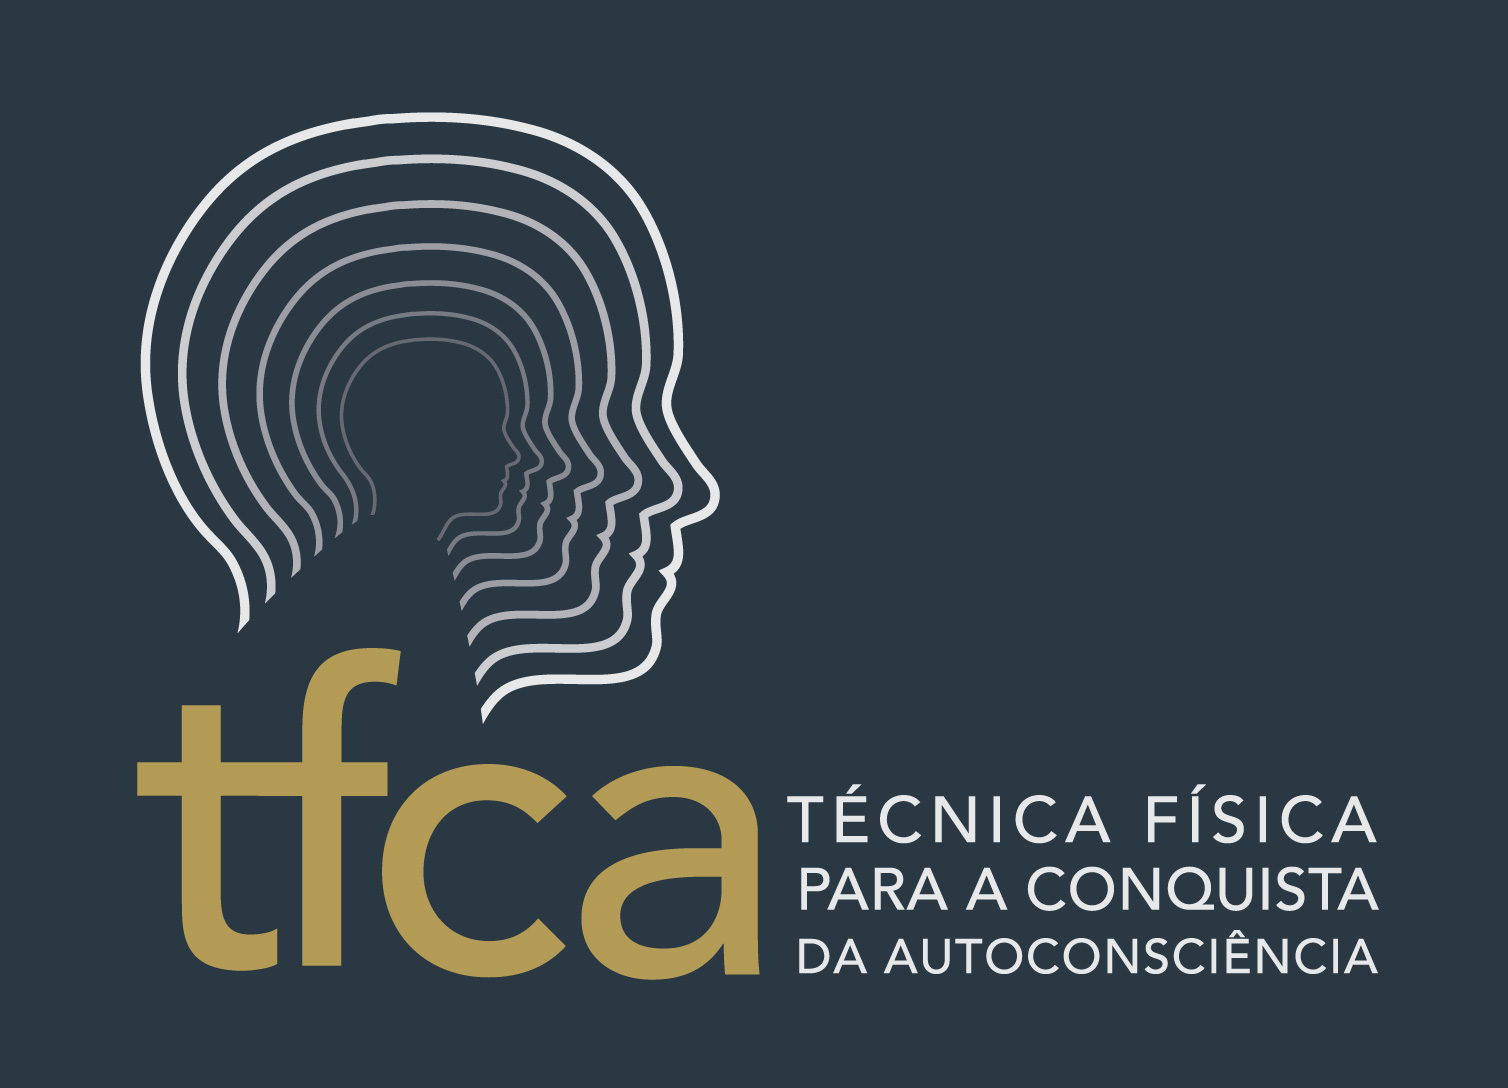 EXERCÍCIOS DA TFCA - TÉCNICA FÍSICA PARA A CONQUISTA DA AUTOCONSCIÊNCIA Estamos na Web www.tfca.com.